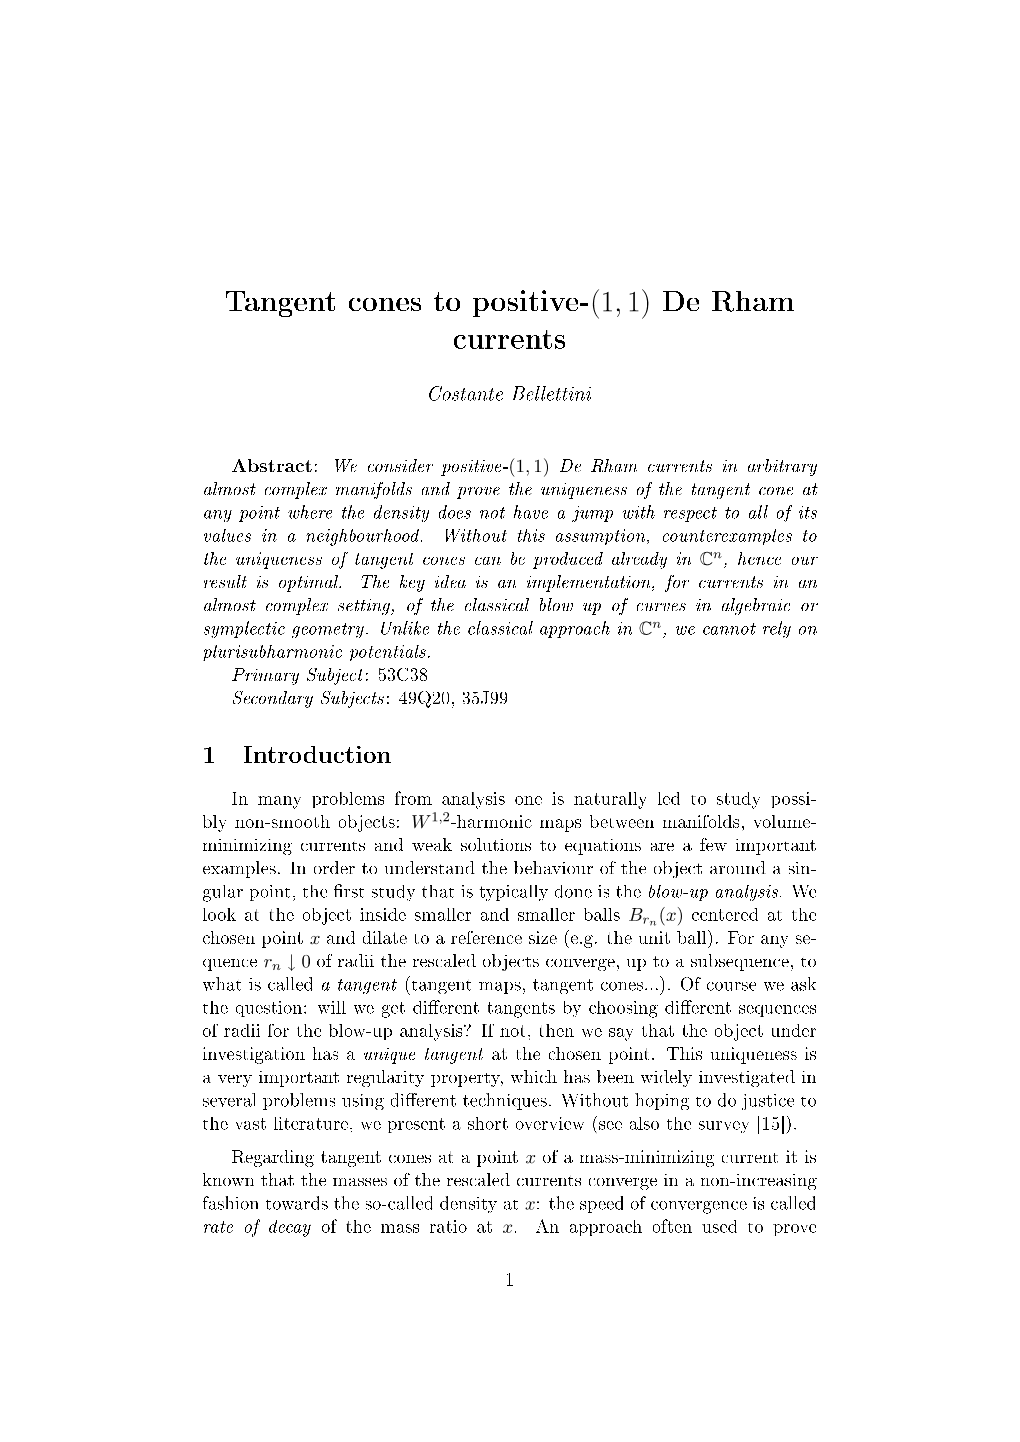 Tangent Cones to Positive-(1,1) De Rham Currents